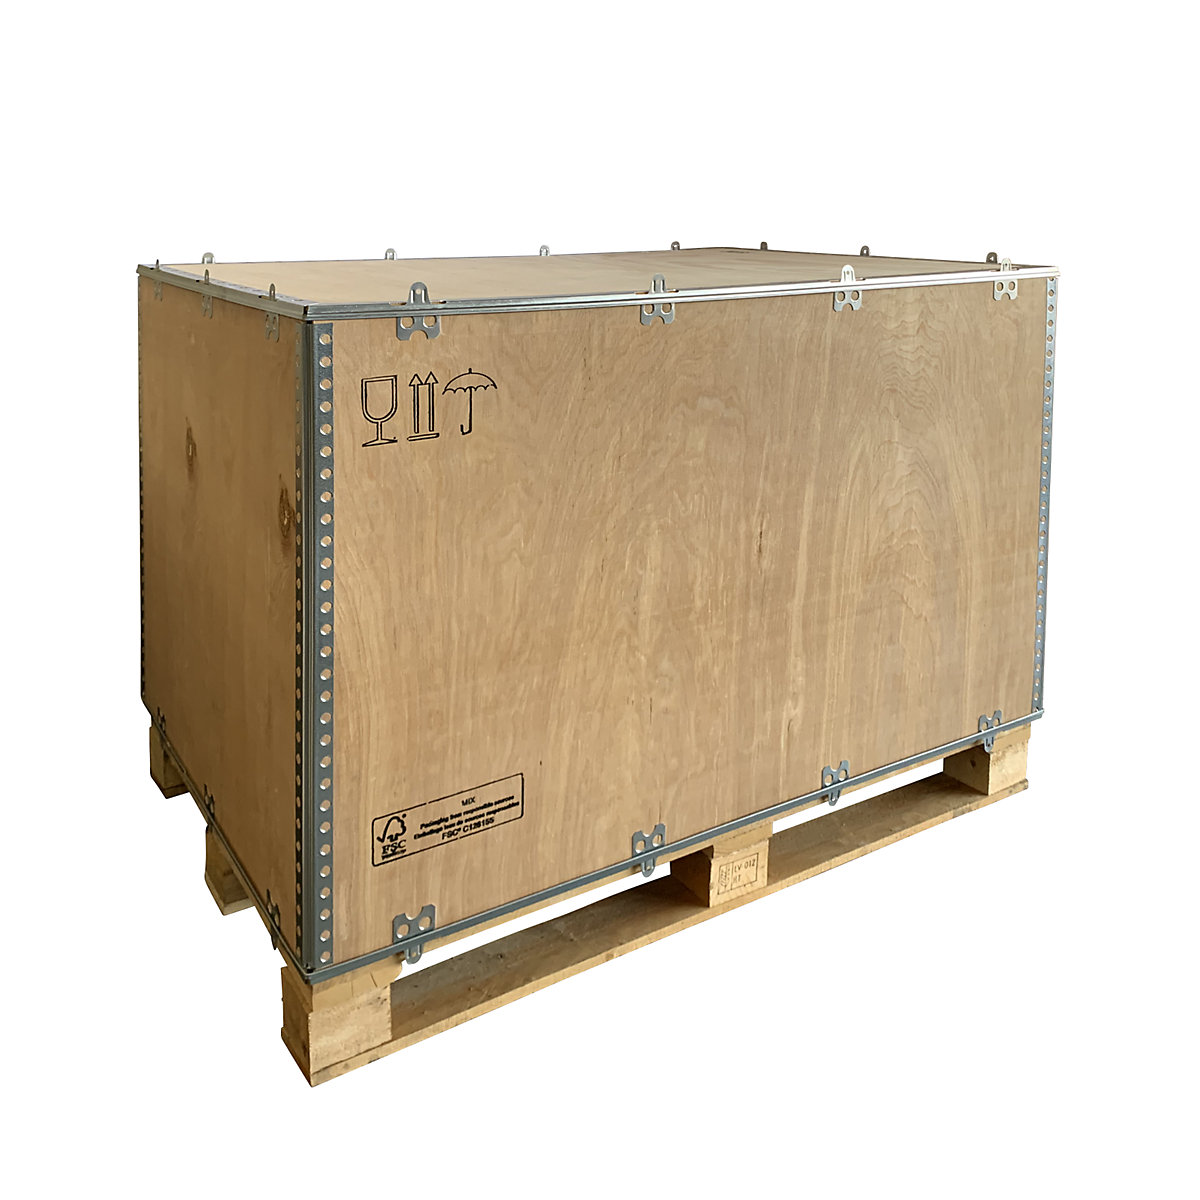 Opvouwbare houten kist, standaard, l x b x h = 1180 x 780 x 750 mm, vanaf 20 stuks-1